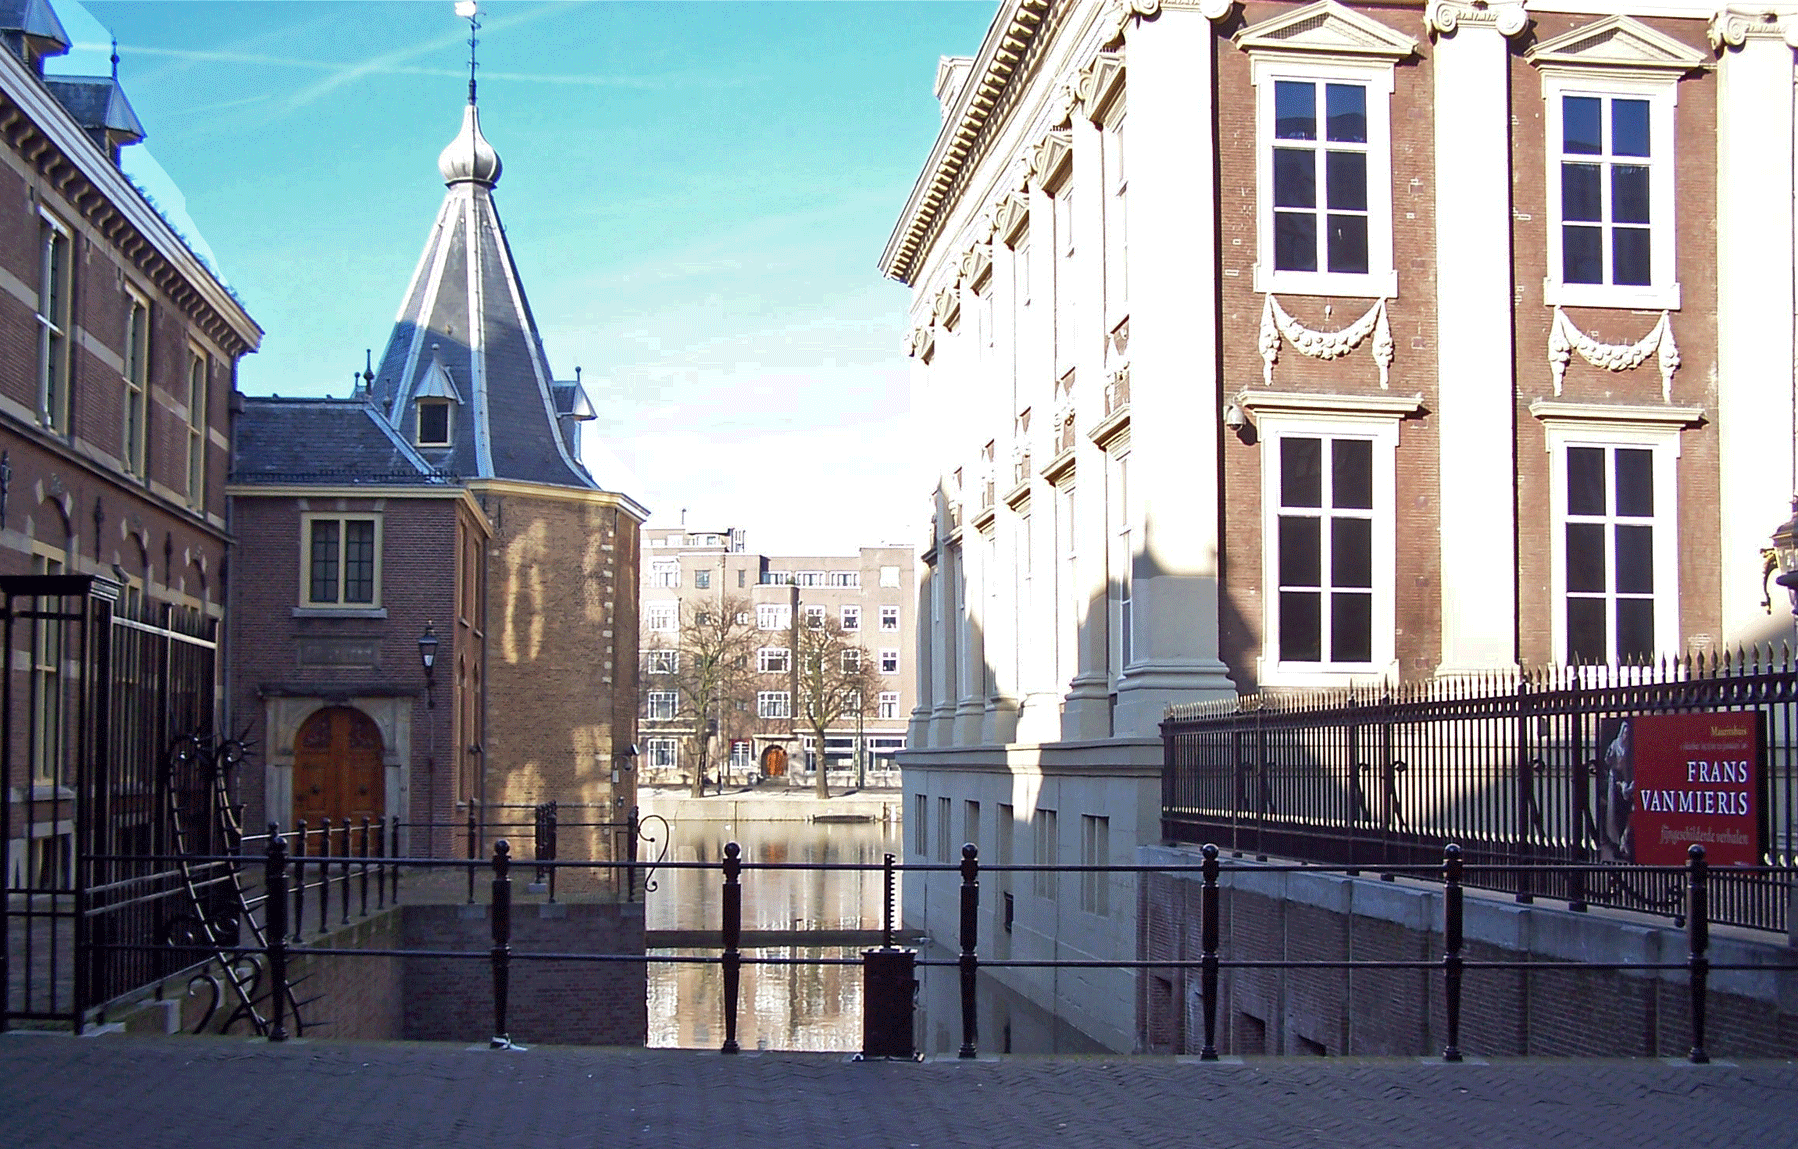 Laatste stuk gracht van de grachten die vroeger rond het Binnenhof lagen. Dit stuk ligt tussen het ministerstorentje en Mauritshuis.